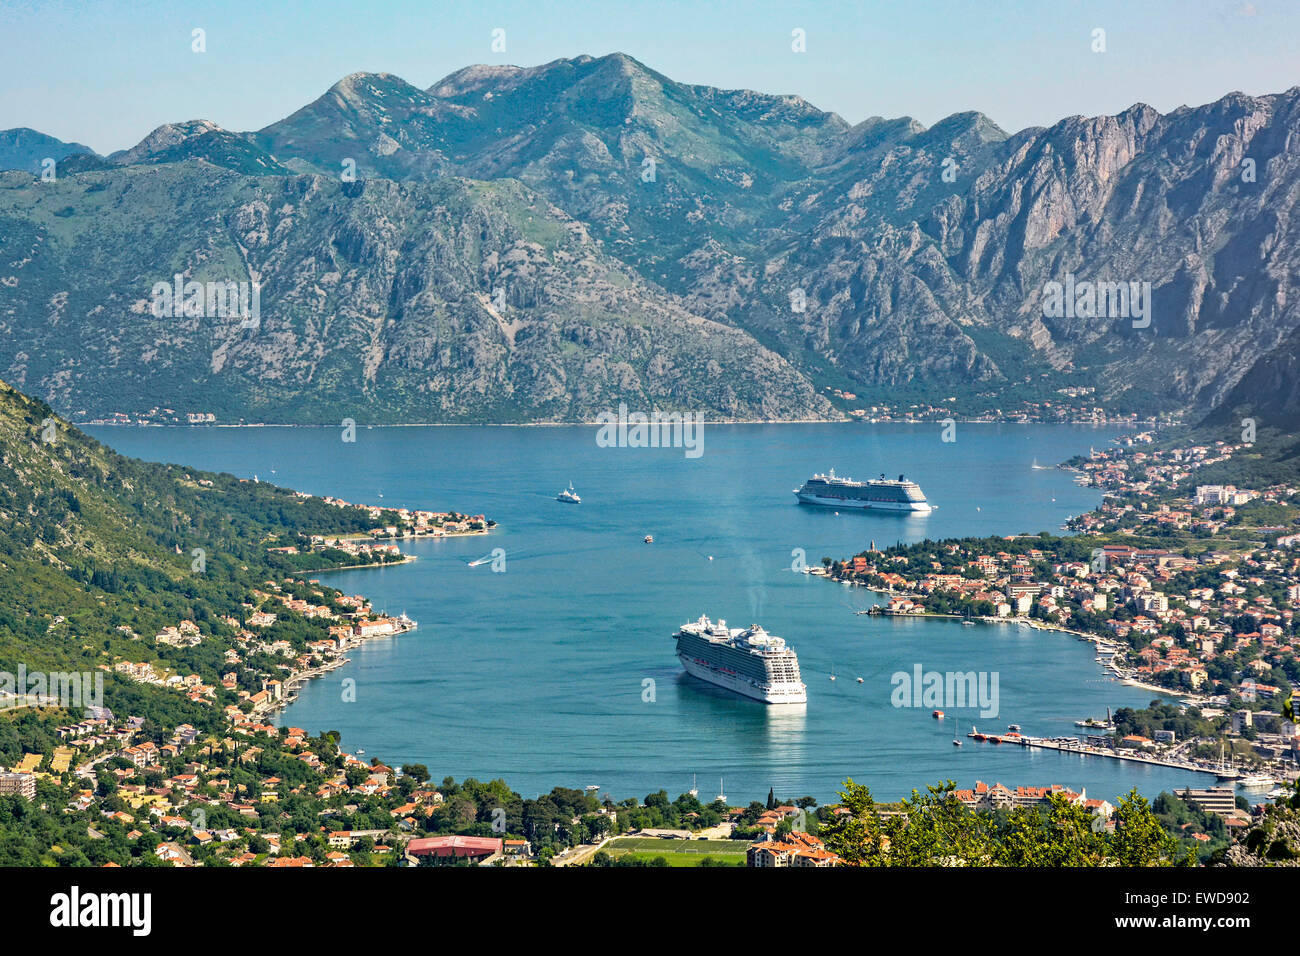 Montenegro, Kotor hinunter auf die Stadt und die Bucht von Kotor mit Kreuzfahrtschiff Regal Princess und Celebrity Silhouette suchen günstig an der Küste Stockfoto